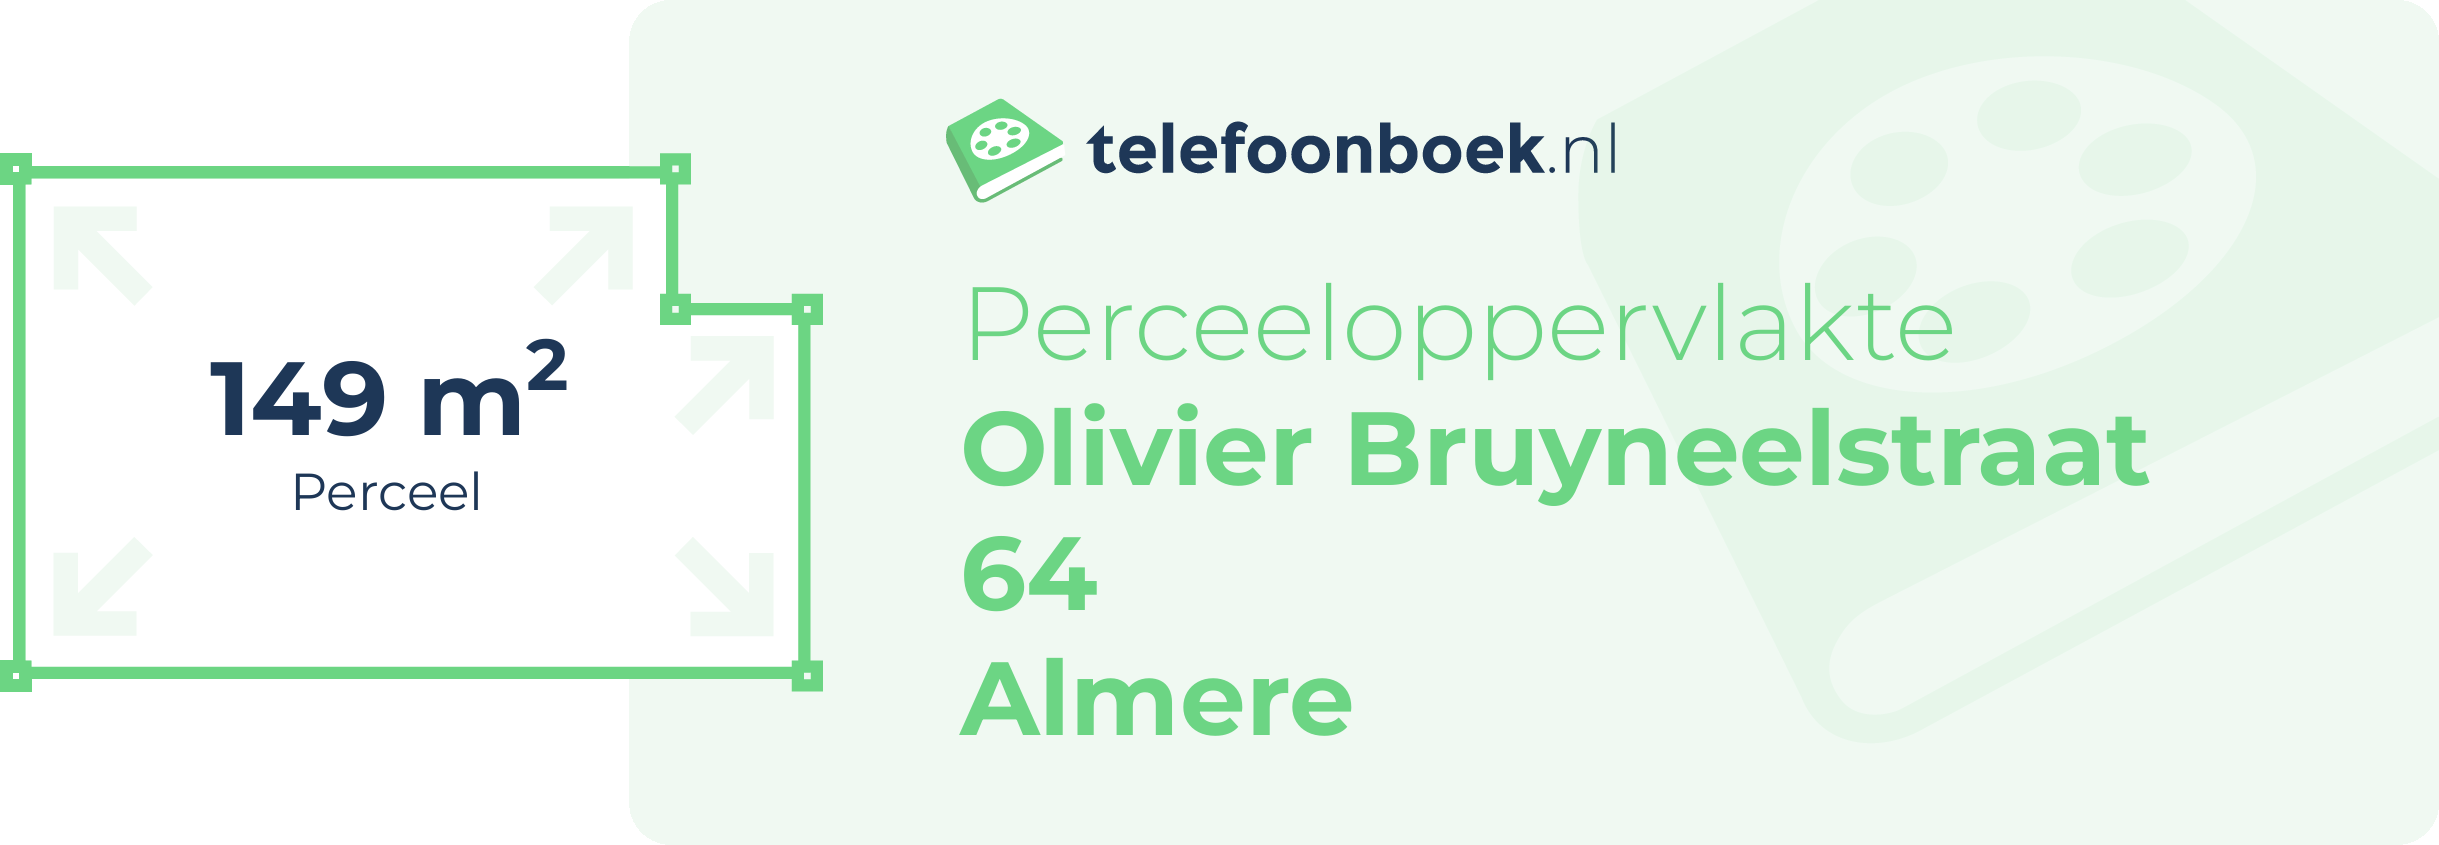 Perceeloppervlakte Olivier Bruyneelstraat 64 Almere